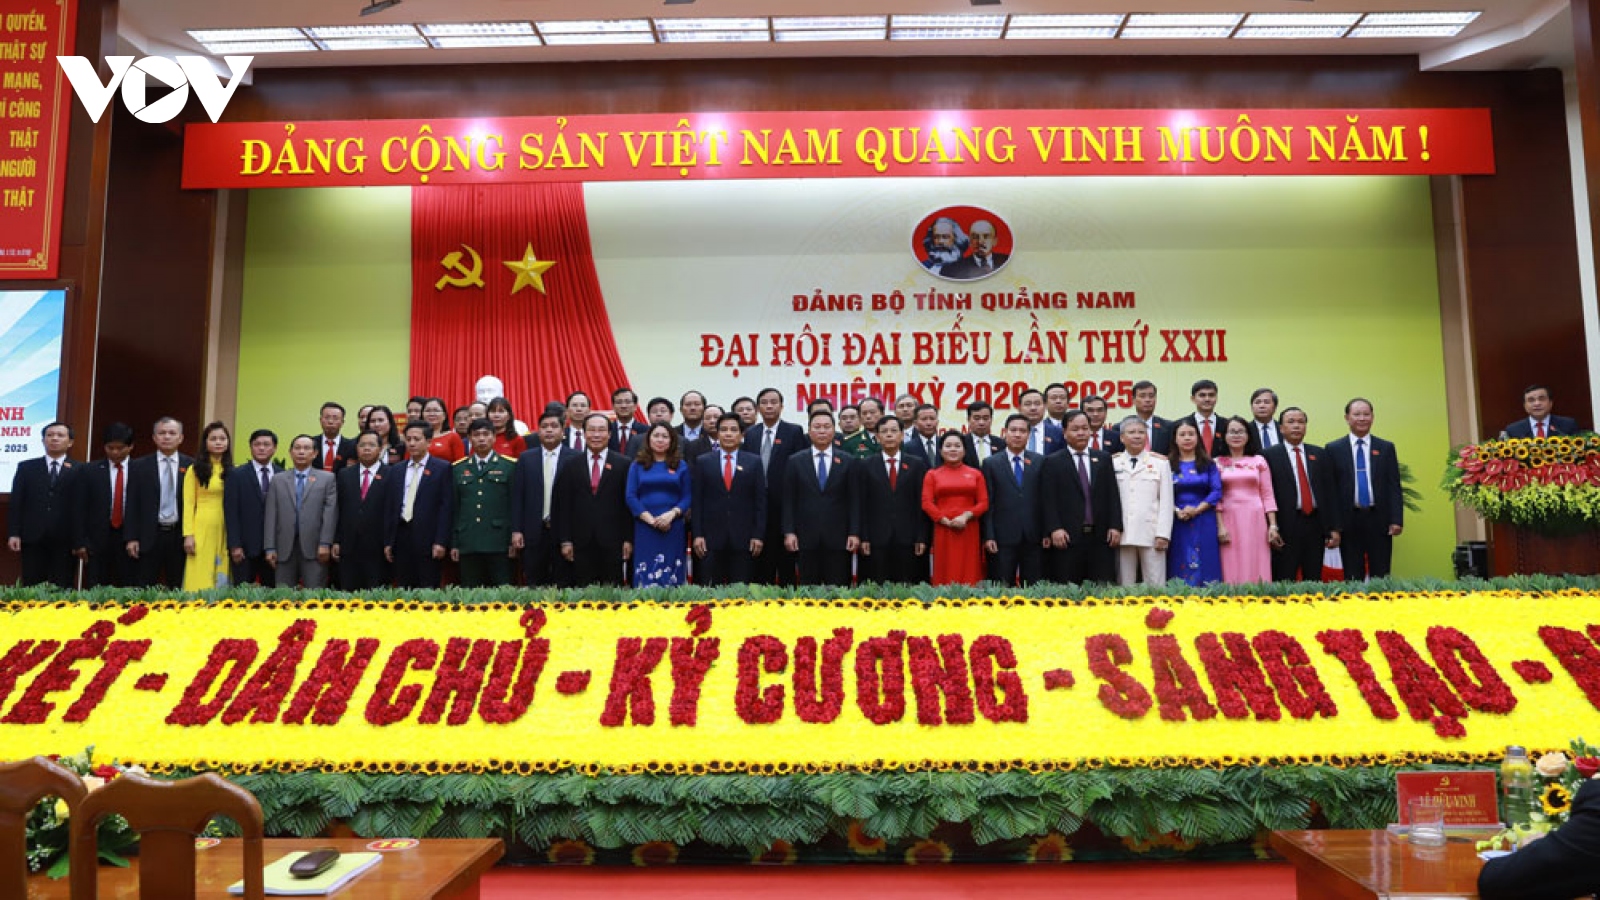 Bế mạc Đại hội Đảng bộ tỉnh Quảng Nam lần thứ XXII